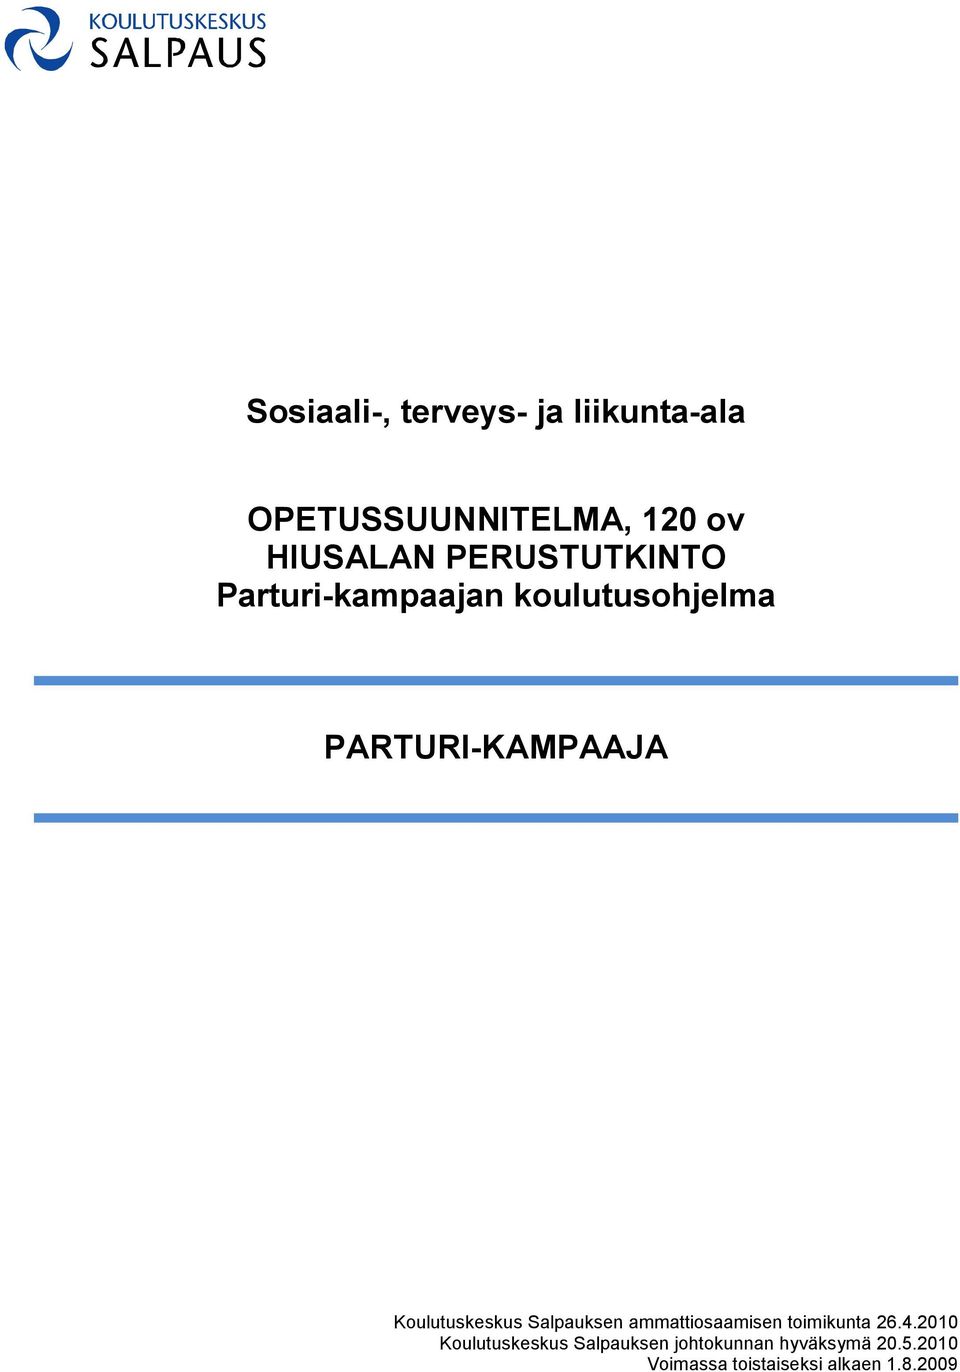 Koulutuskeskus Salpauksen ammattiosaamisen toimikunta 26.4.